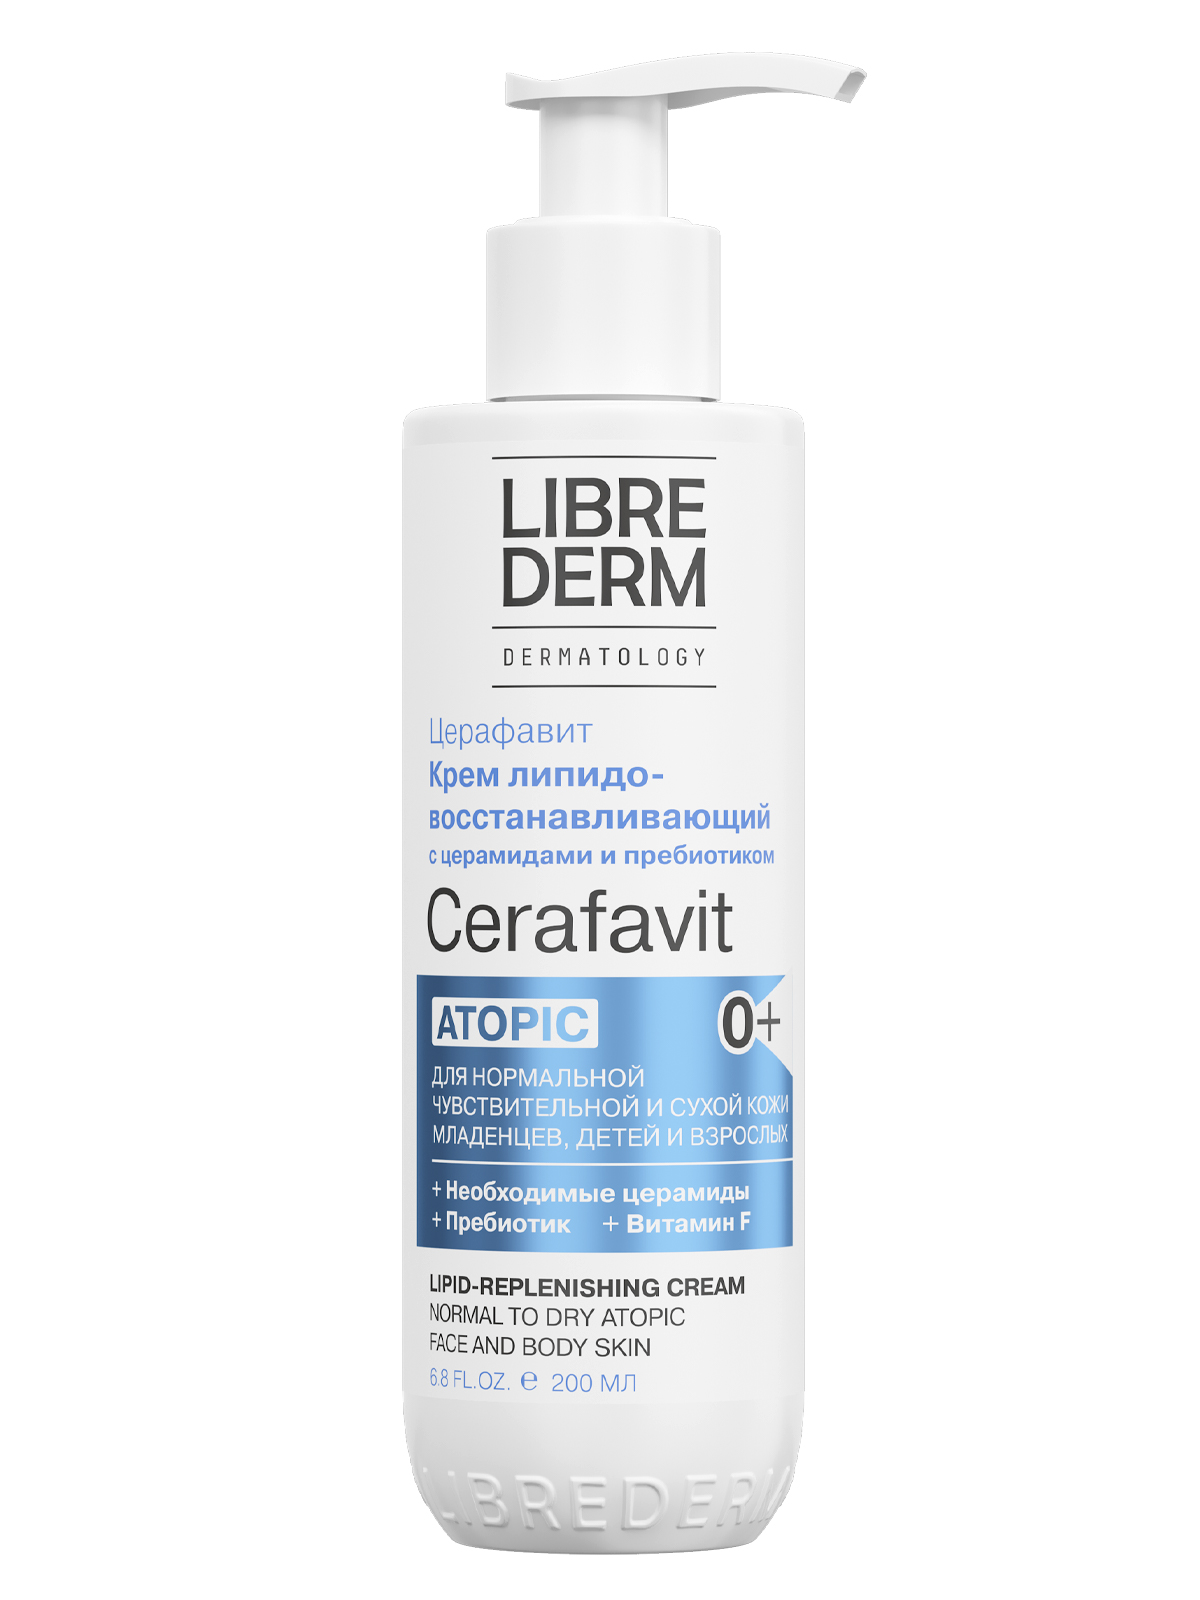 Librederm Cerafavit, крем липидовосстанавливающий с церамидами и пребиотиком для лица и тела, 200 мл диктатура микробиома